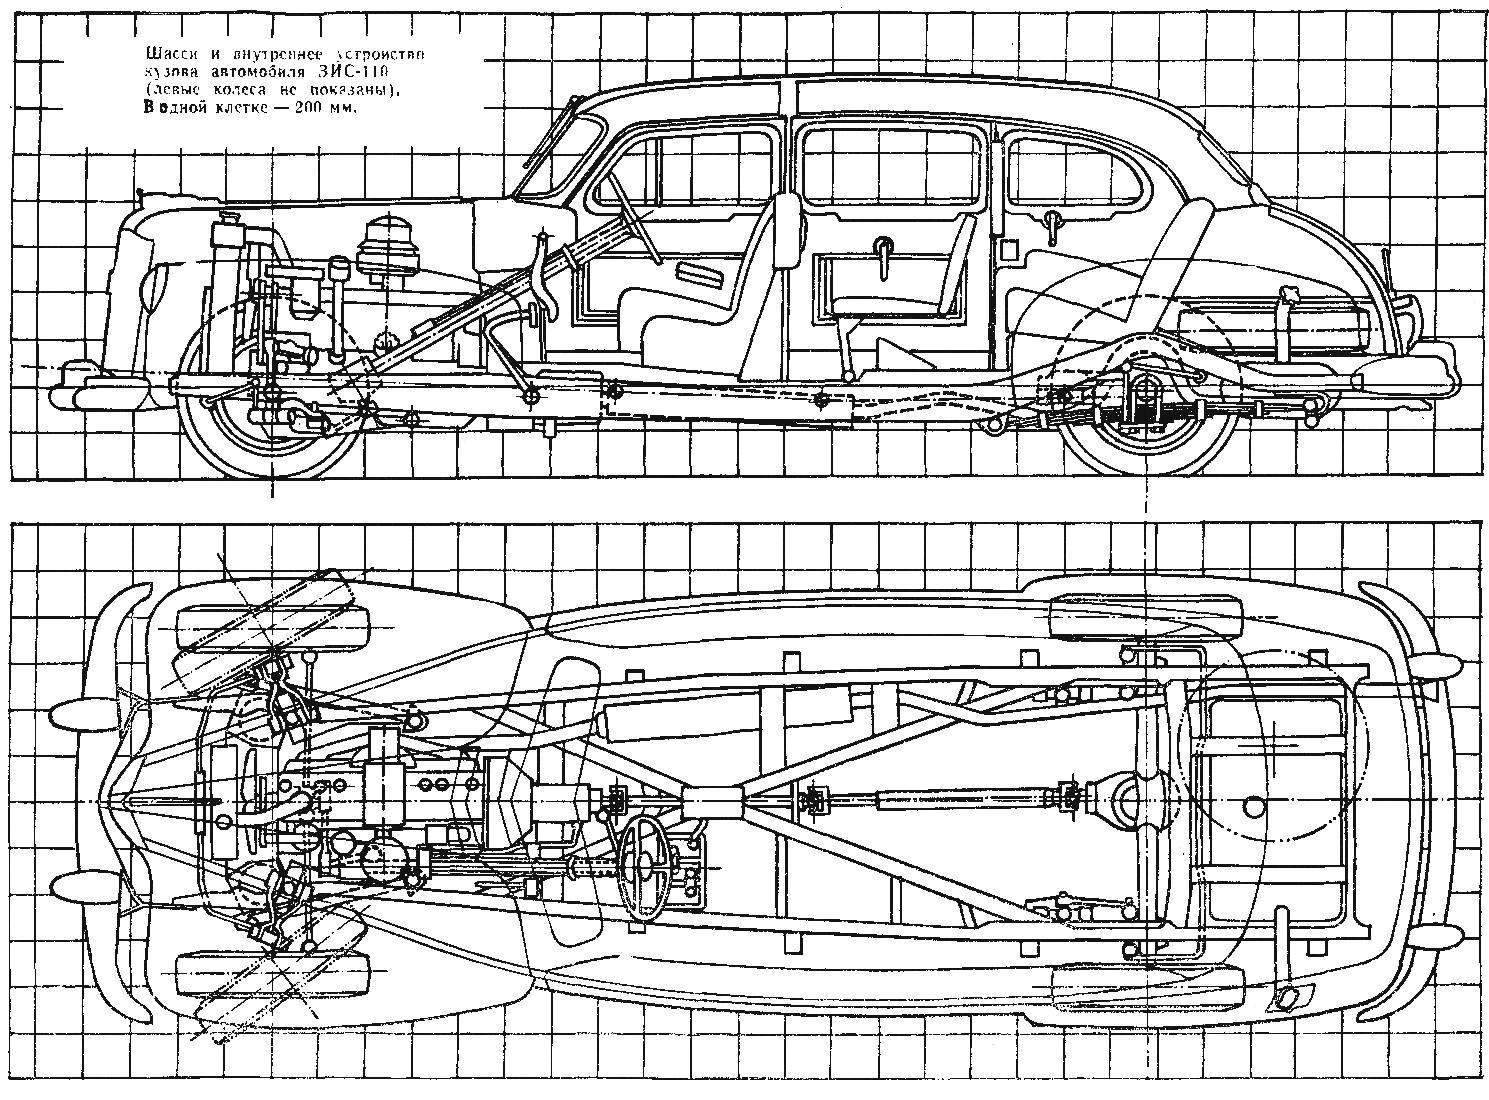 Шасси и внутреннее устройство кузова автомобиля ЗЙС-110 (левые колеса не показаны). В одной клетке — 200 мм.